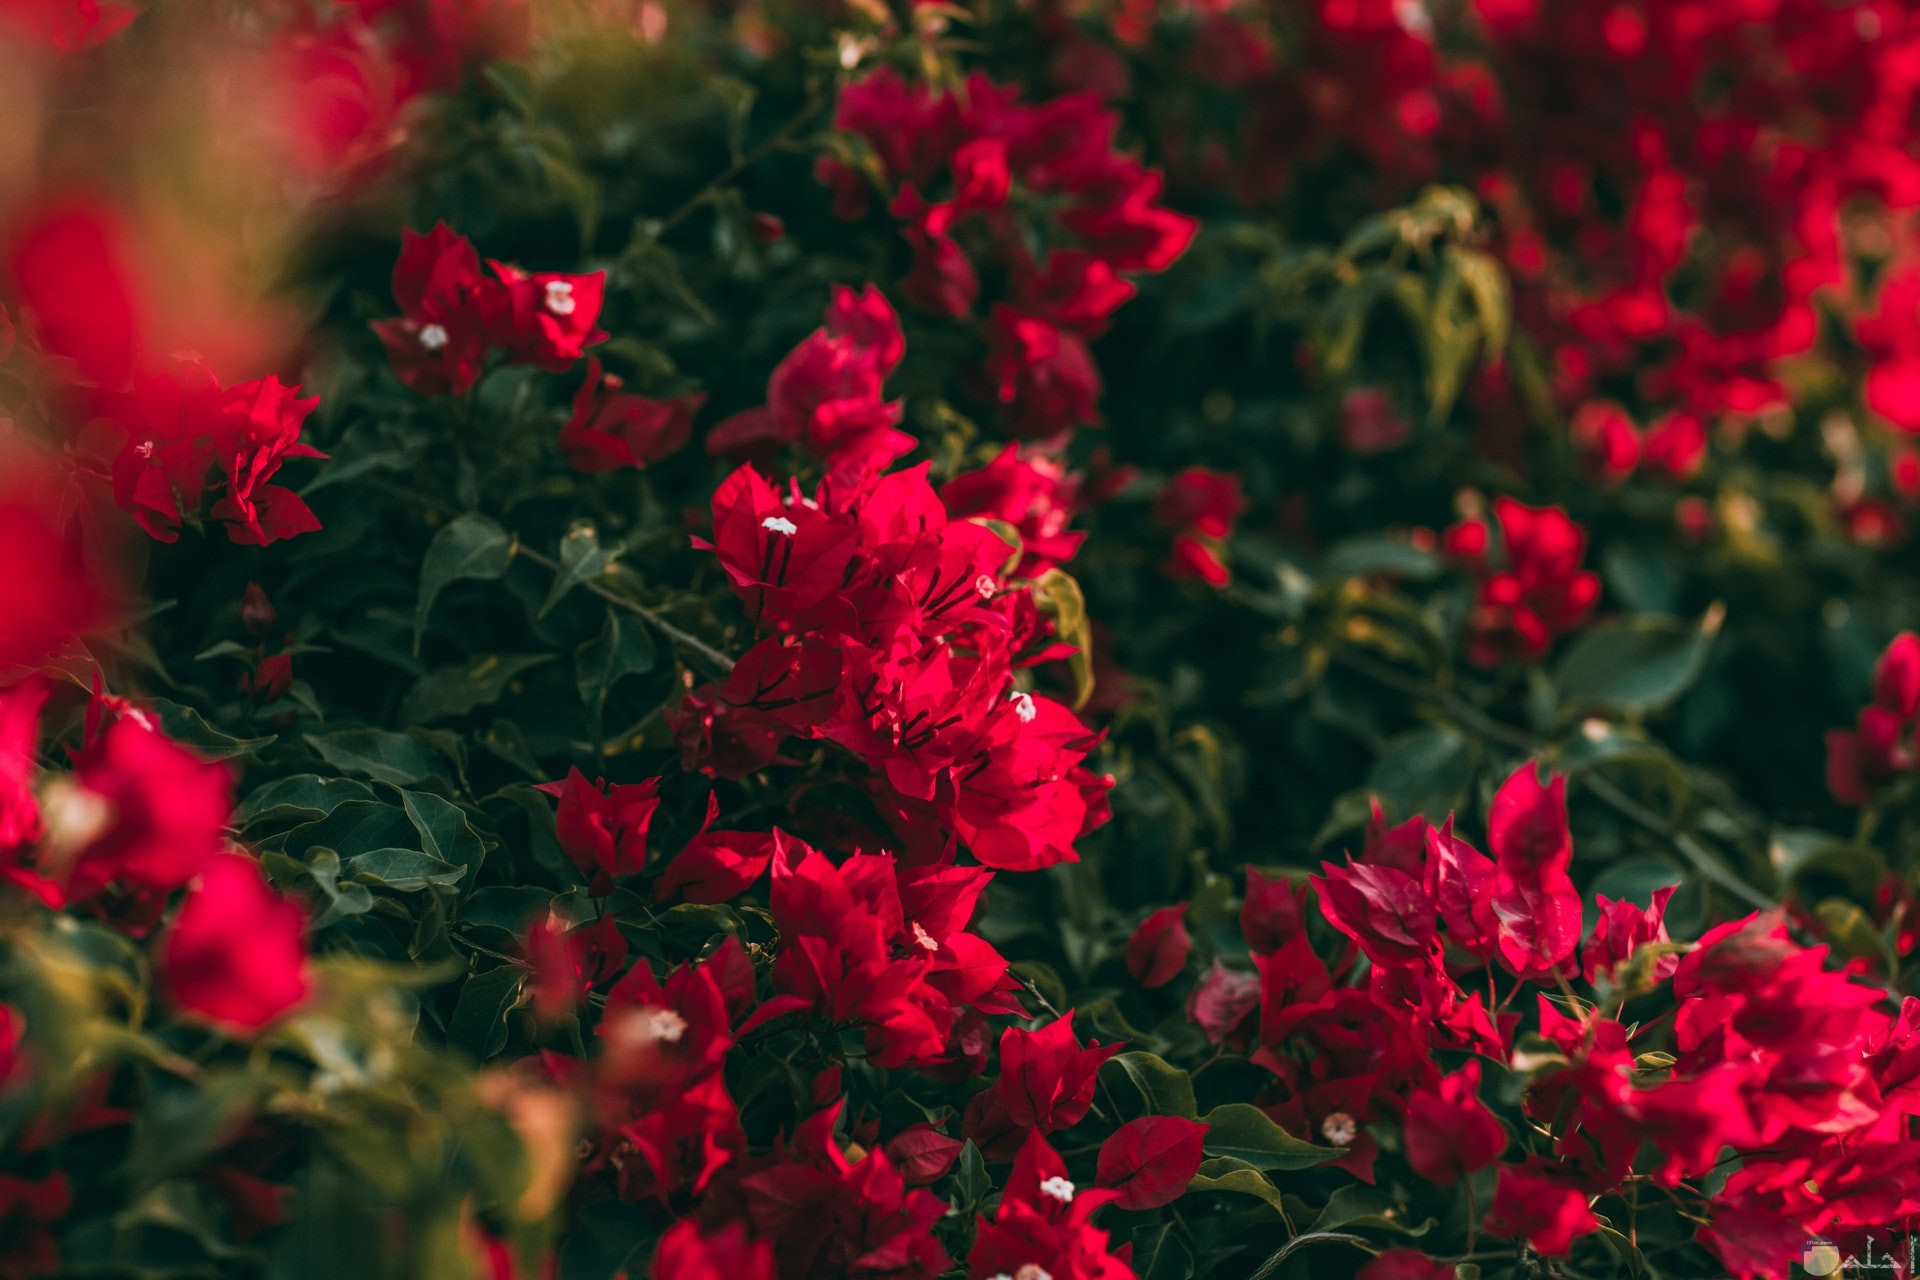 صورة حلوة جدا للورد الأحمر الجميل في الحديقة وقت النهار